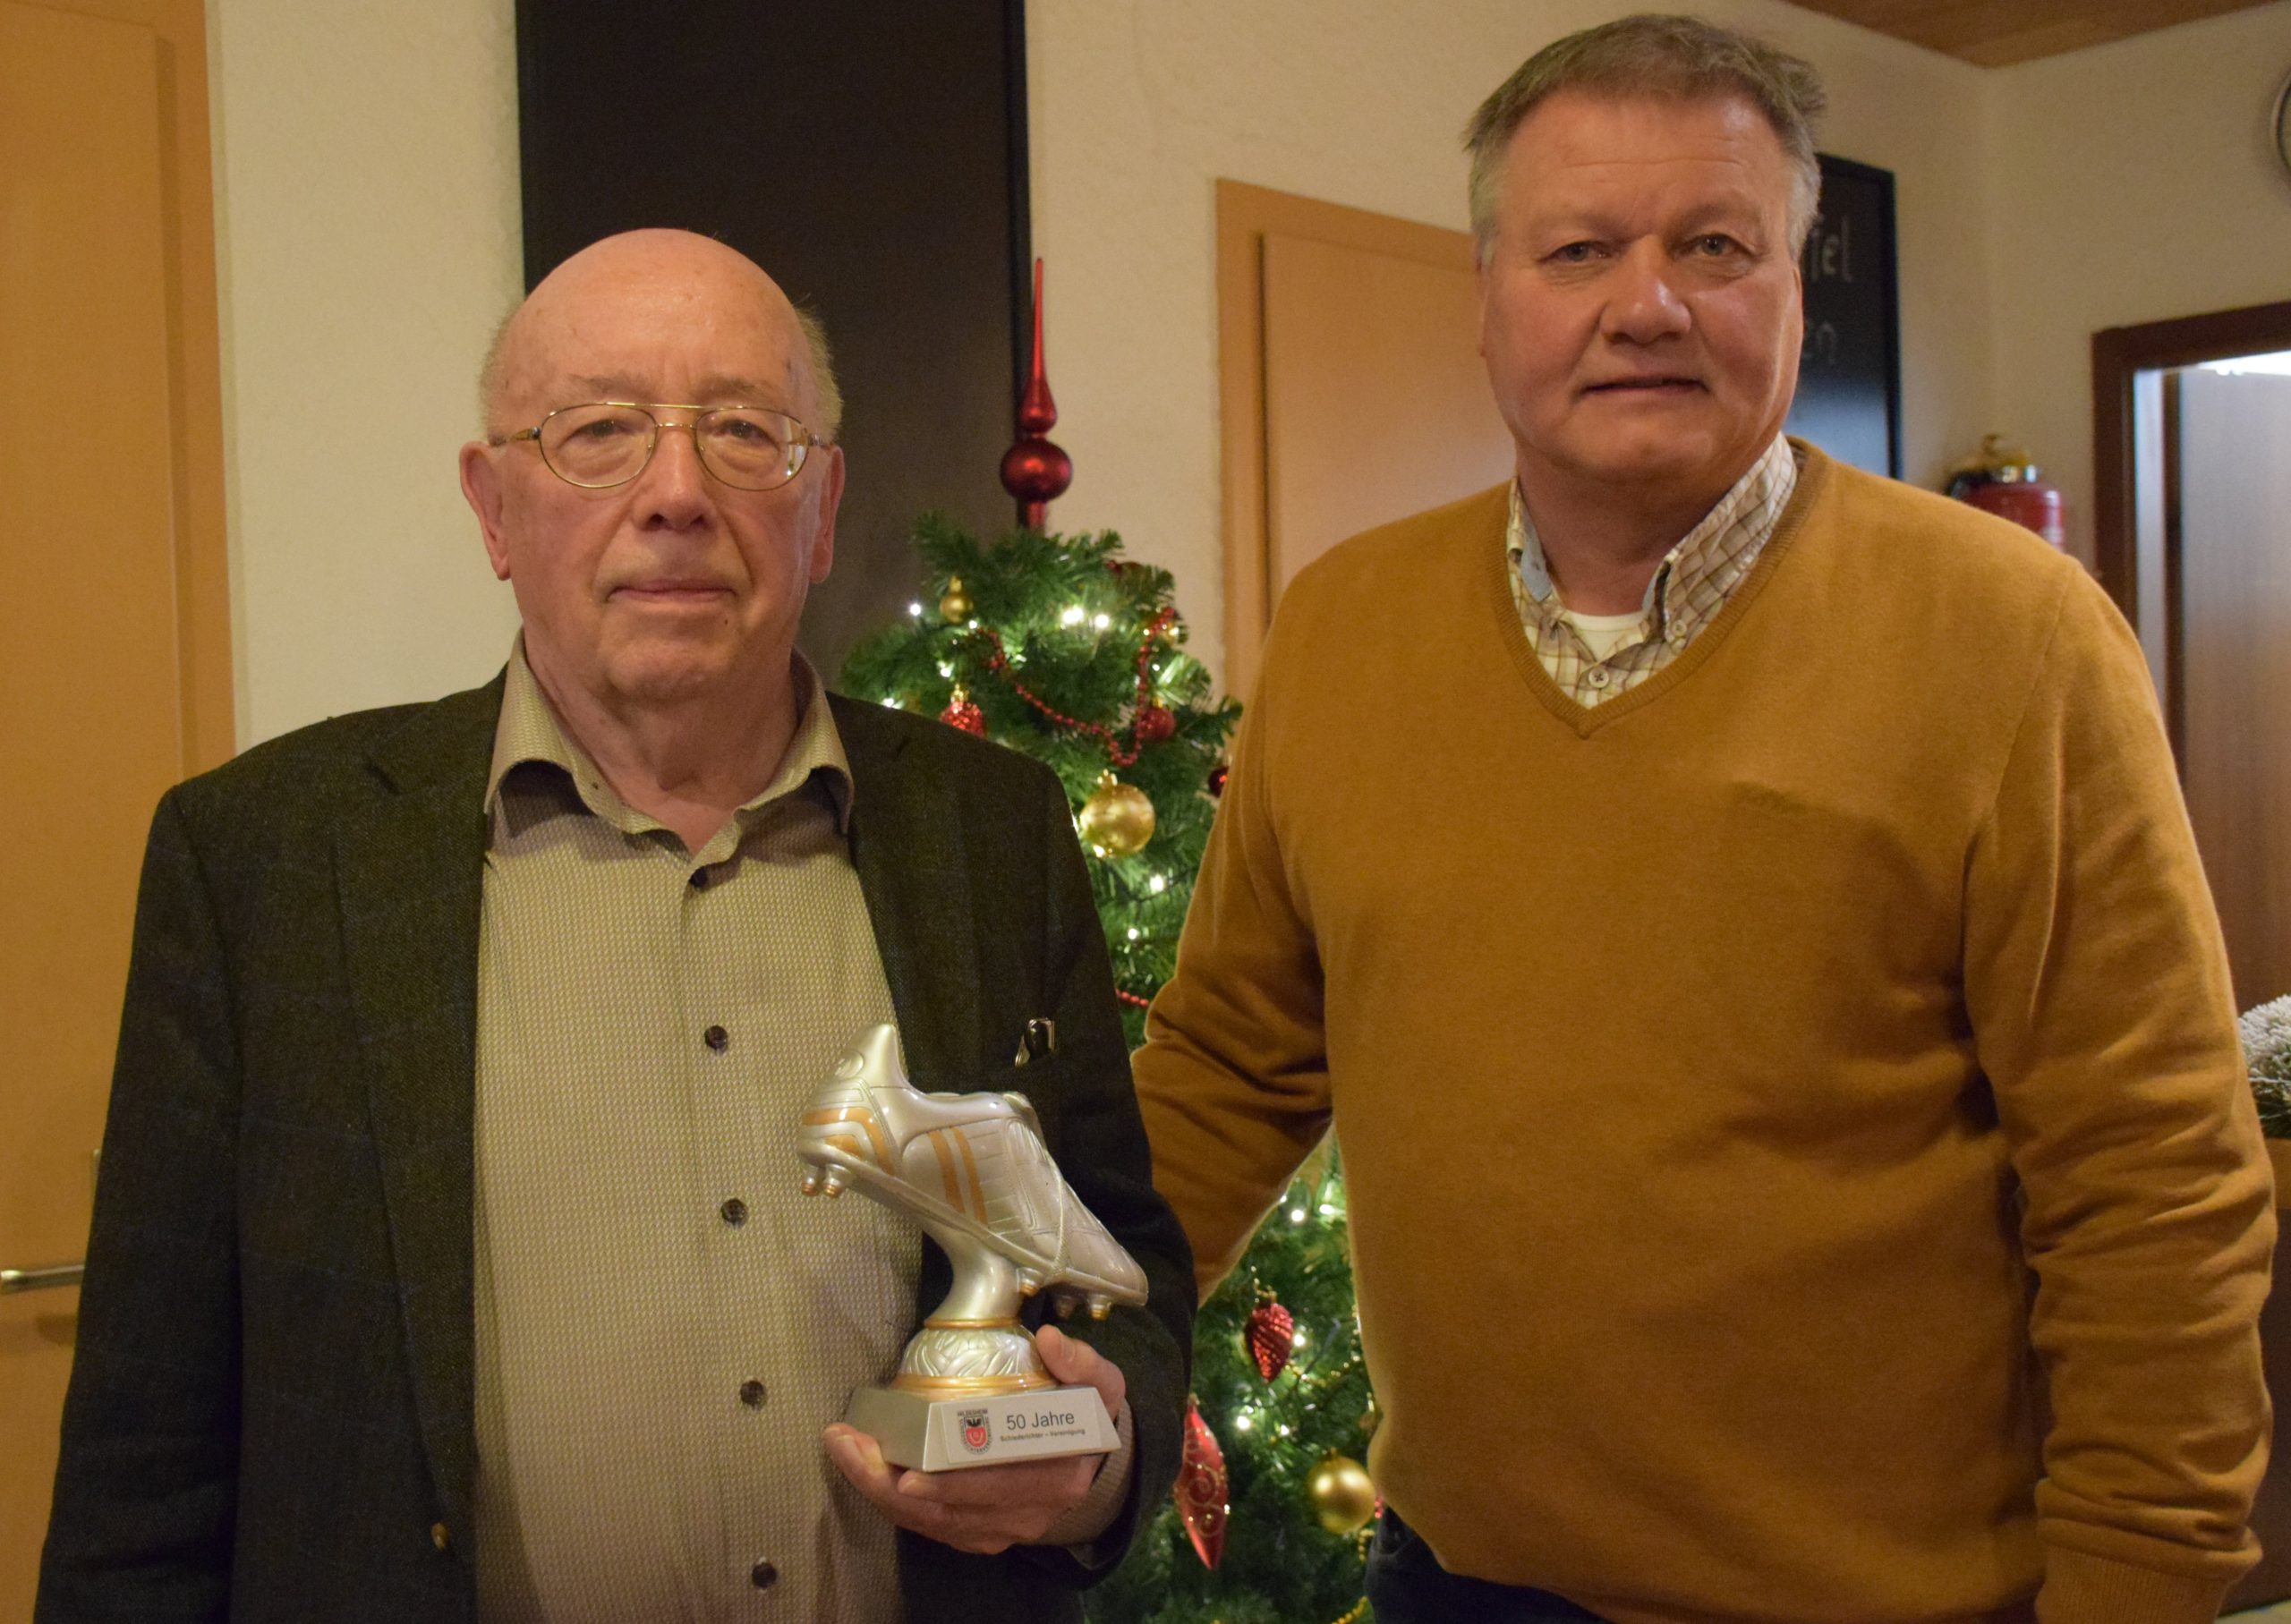 Heinrich Jörren mit dem silbernen Schuh der Schiedsrichtervereinigung für 50 Jahre Mitgliedschaft, Walter Klußmann